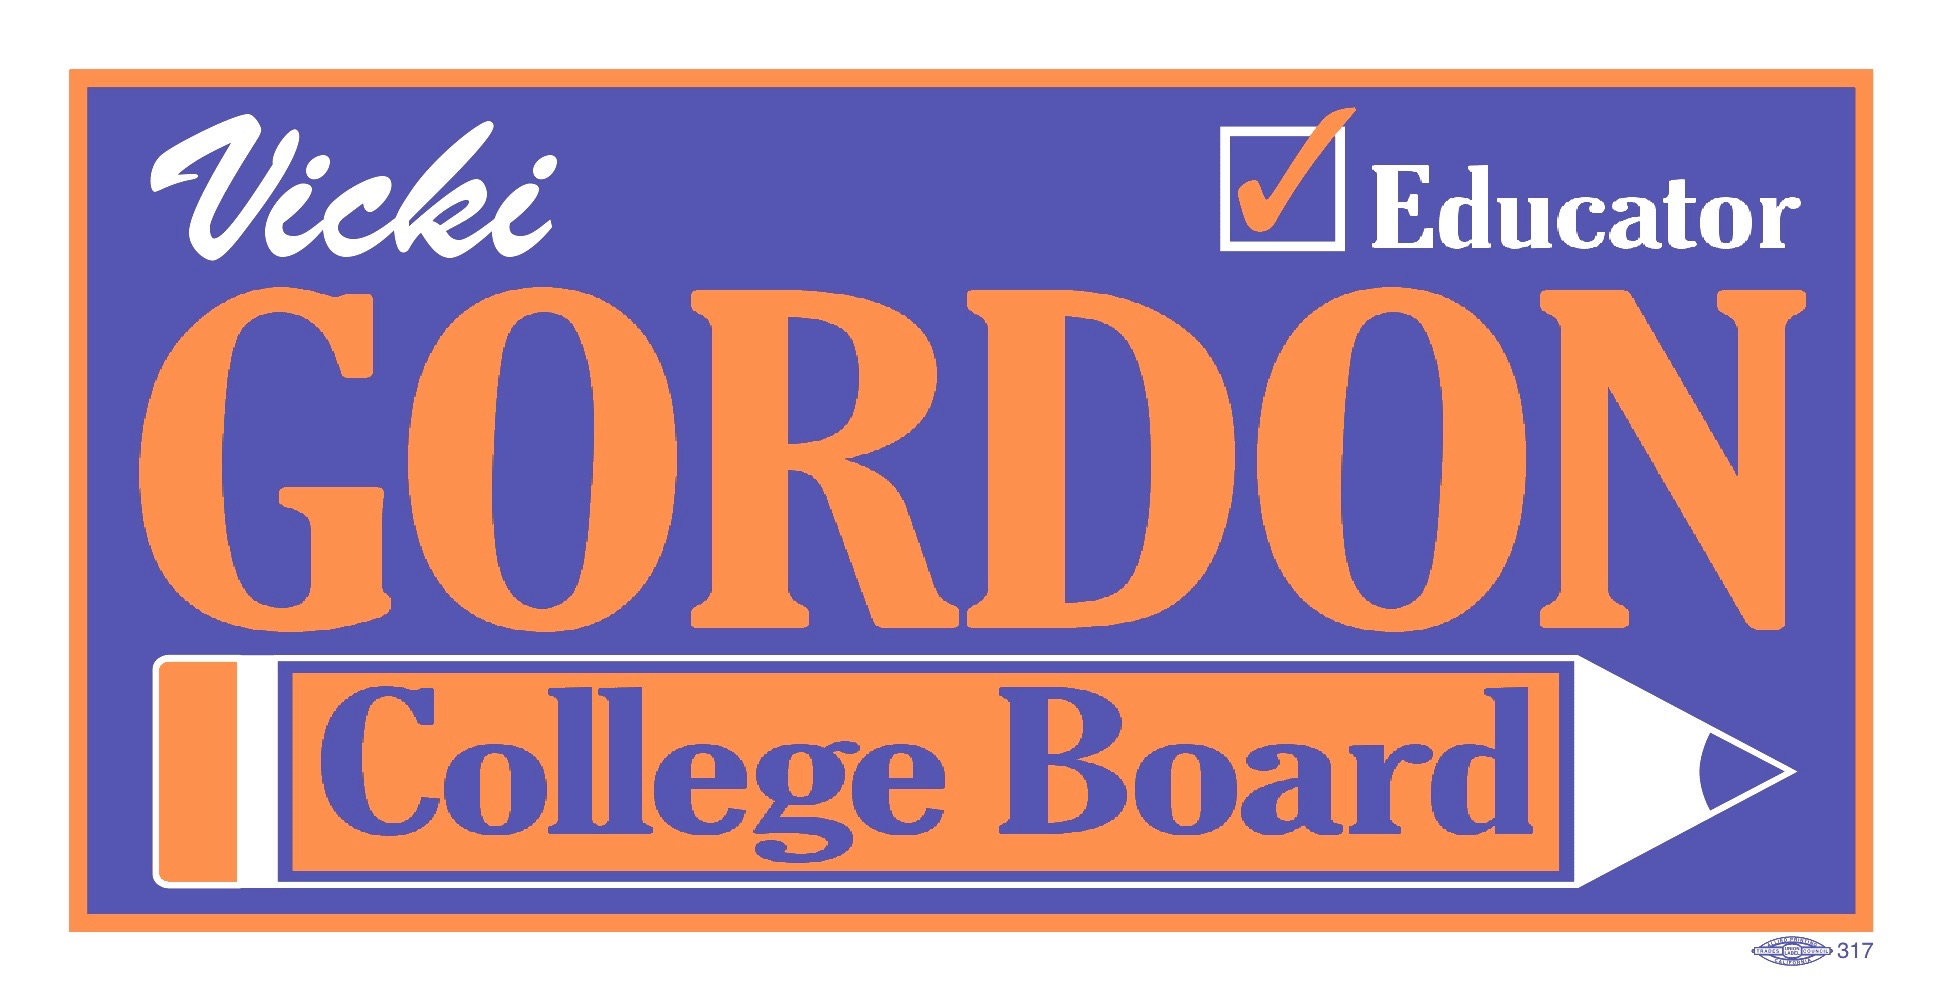 Vicki Gordon for College Board 2020 logo